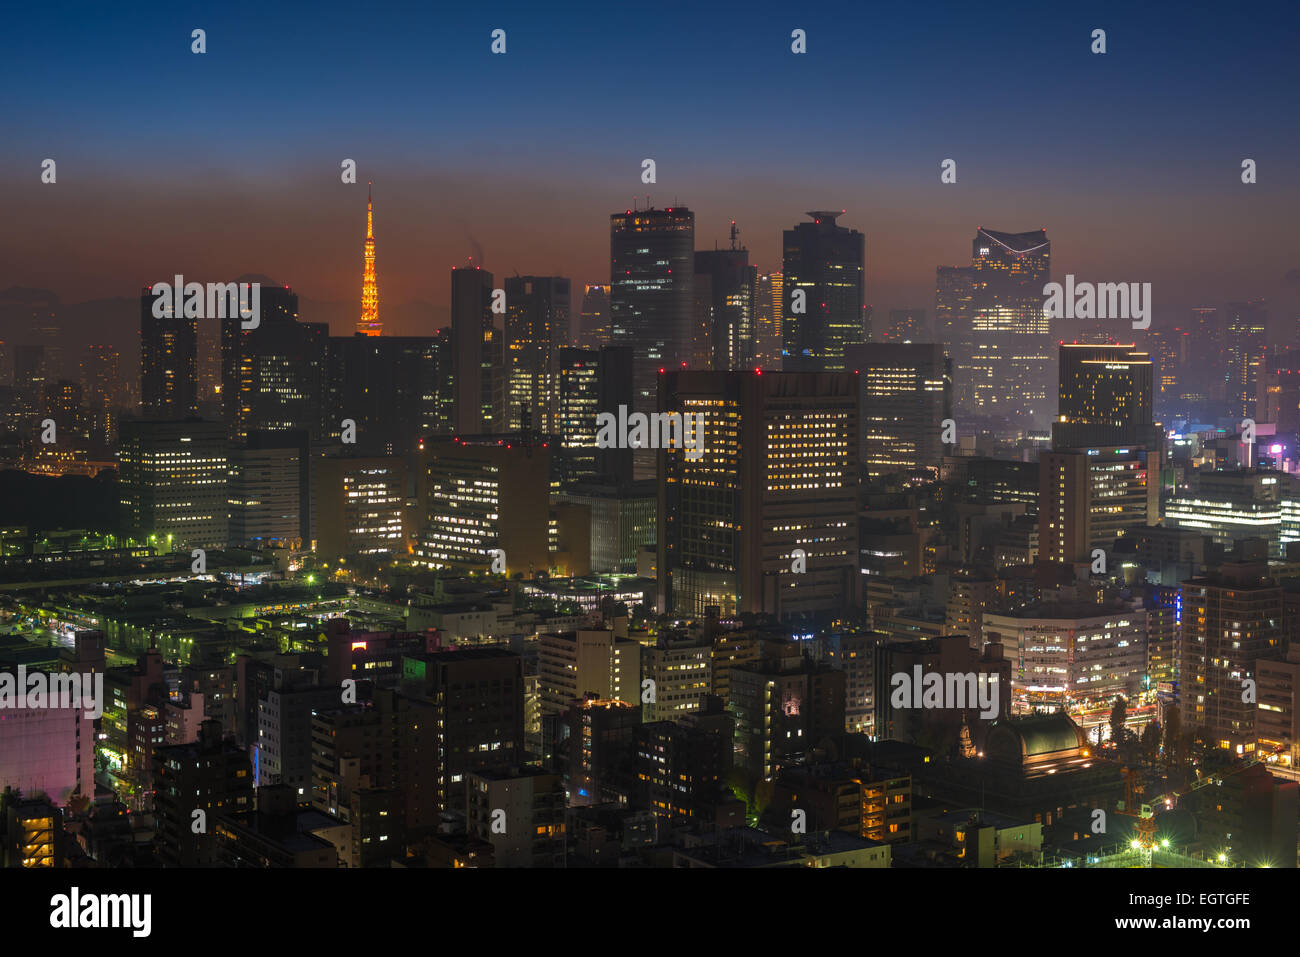 Tokyo night scene, panoramic view Stock Photo